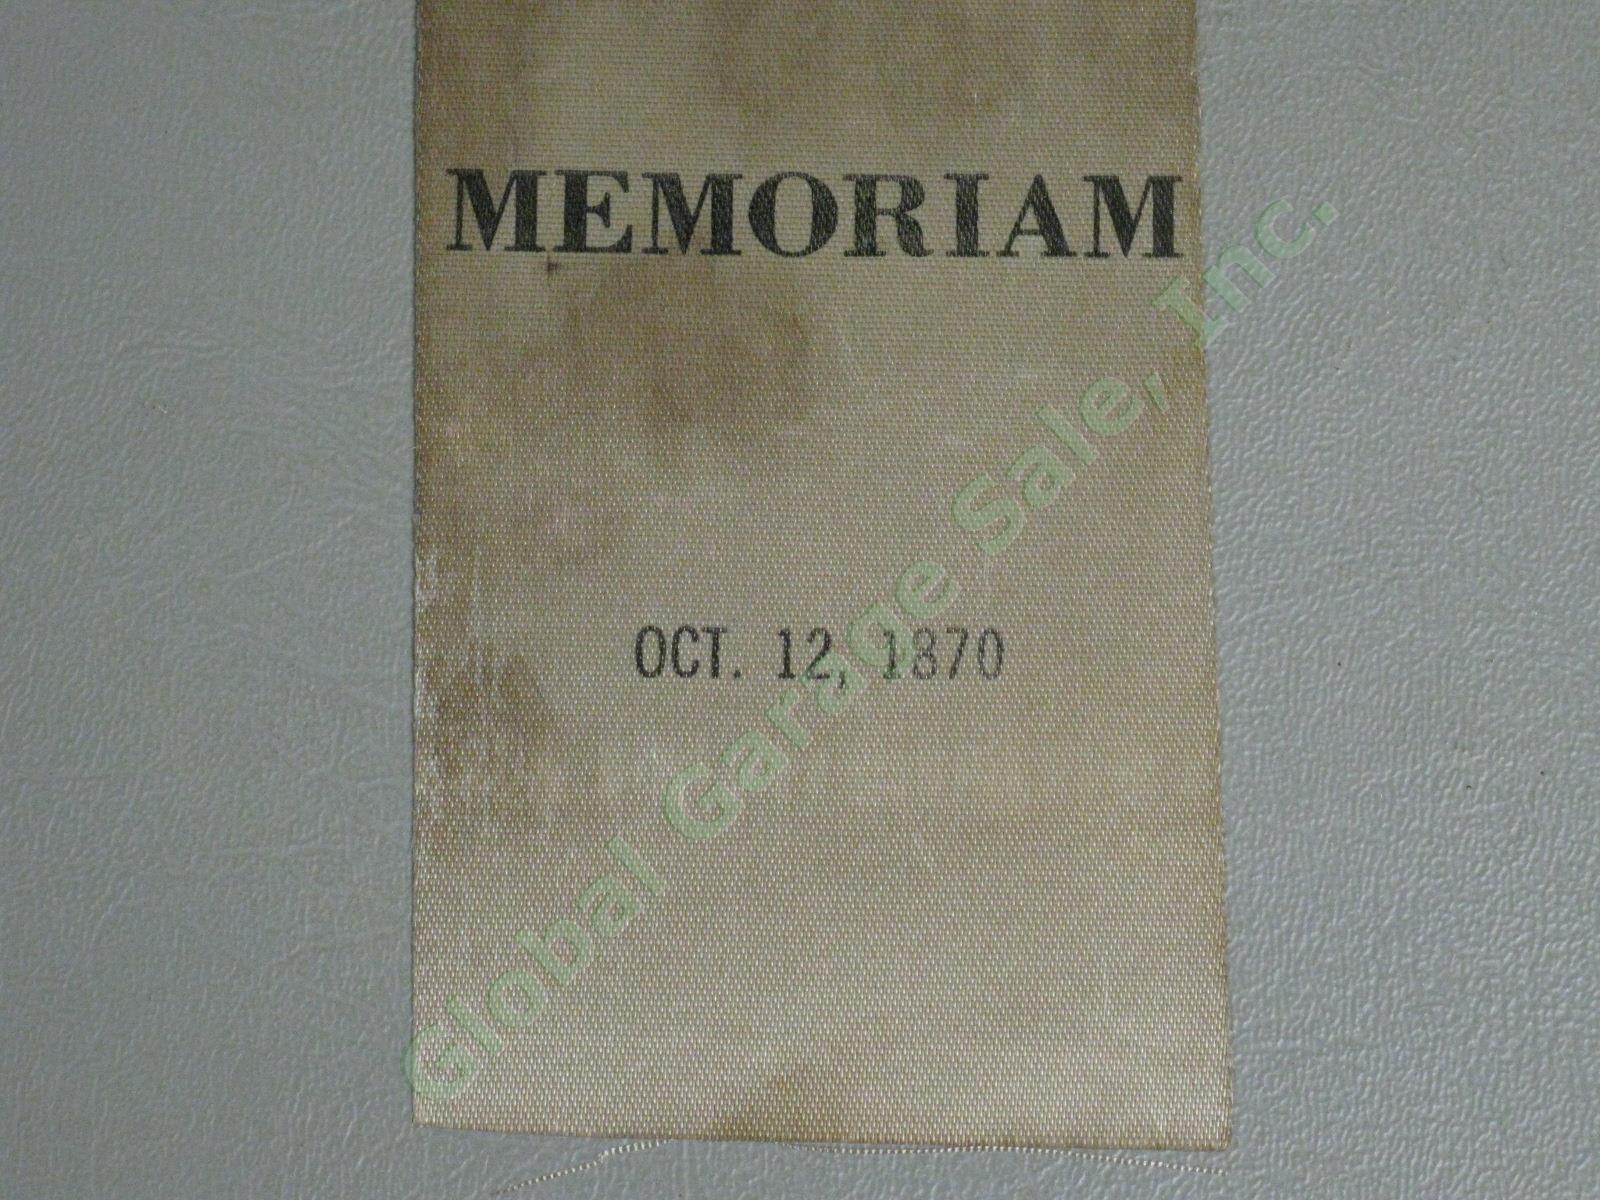 Rare Orig Civil War General Robert E Lee Memoriam Ribbon Oct 12 1870 Memorial 2